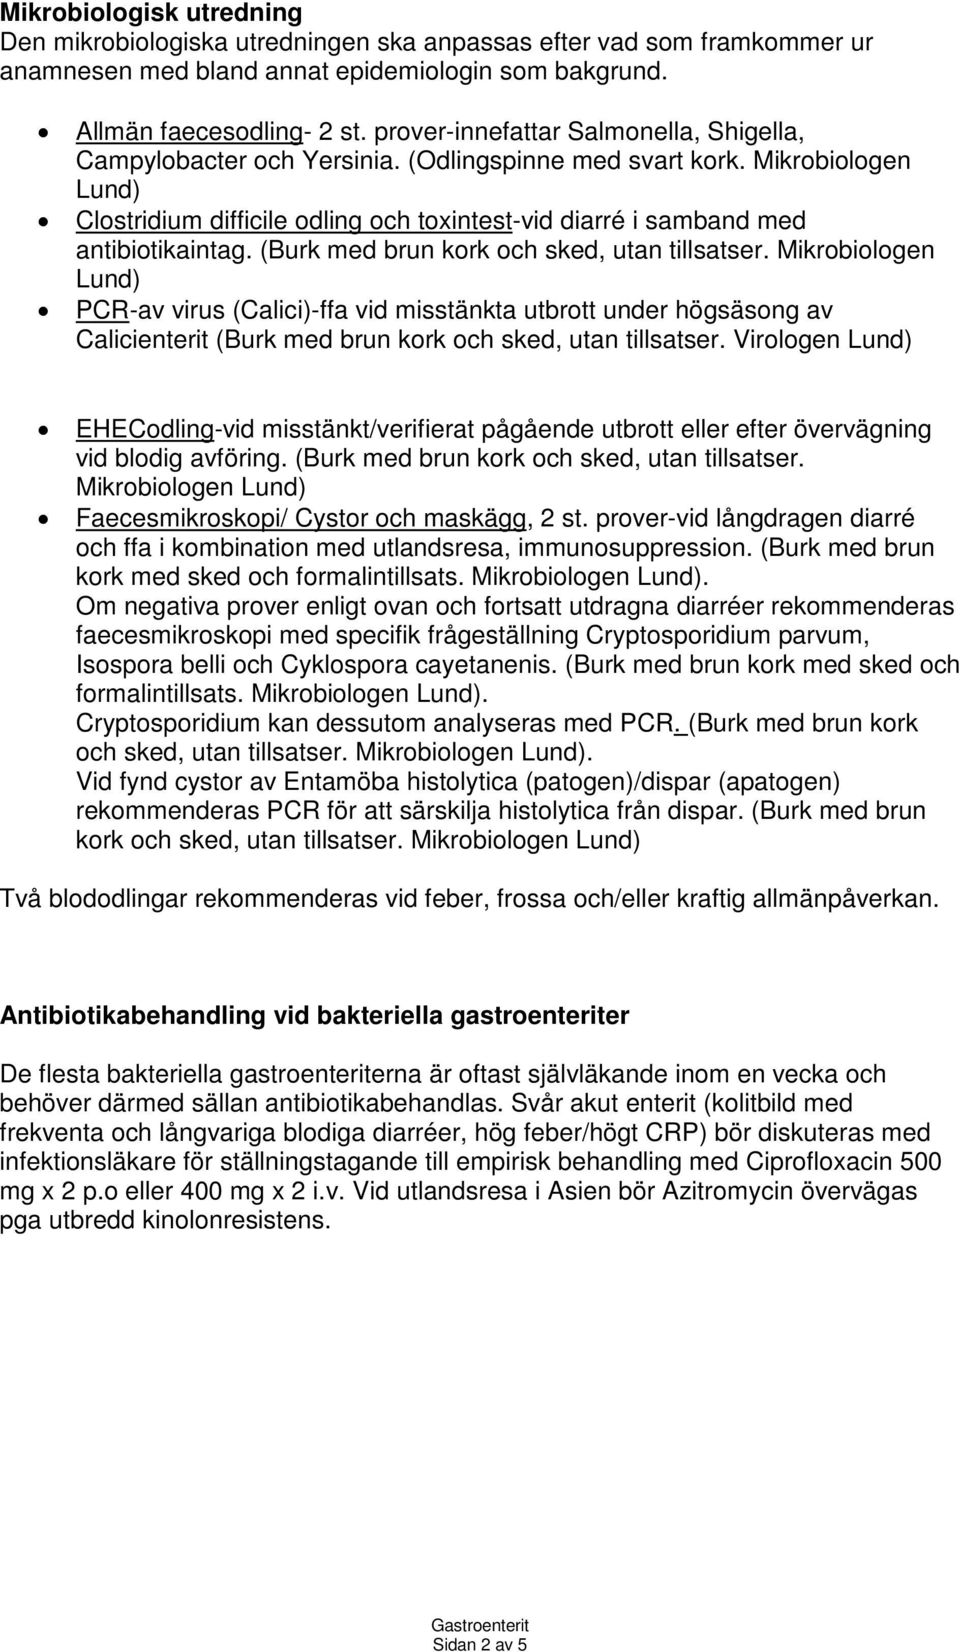 Mikrobiologen Lund) Clostridium difficile odling och toxintest-vid diarré i samband med antibiotikaintag. (Burk med brun kork och sked, utan tillsatser.